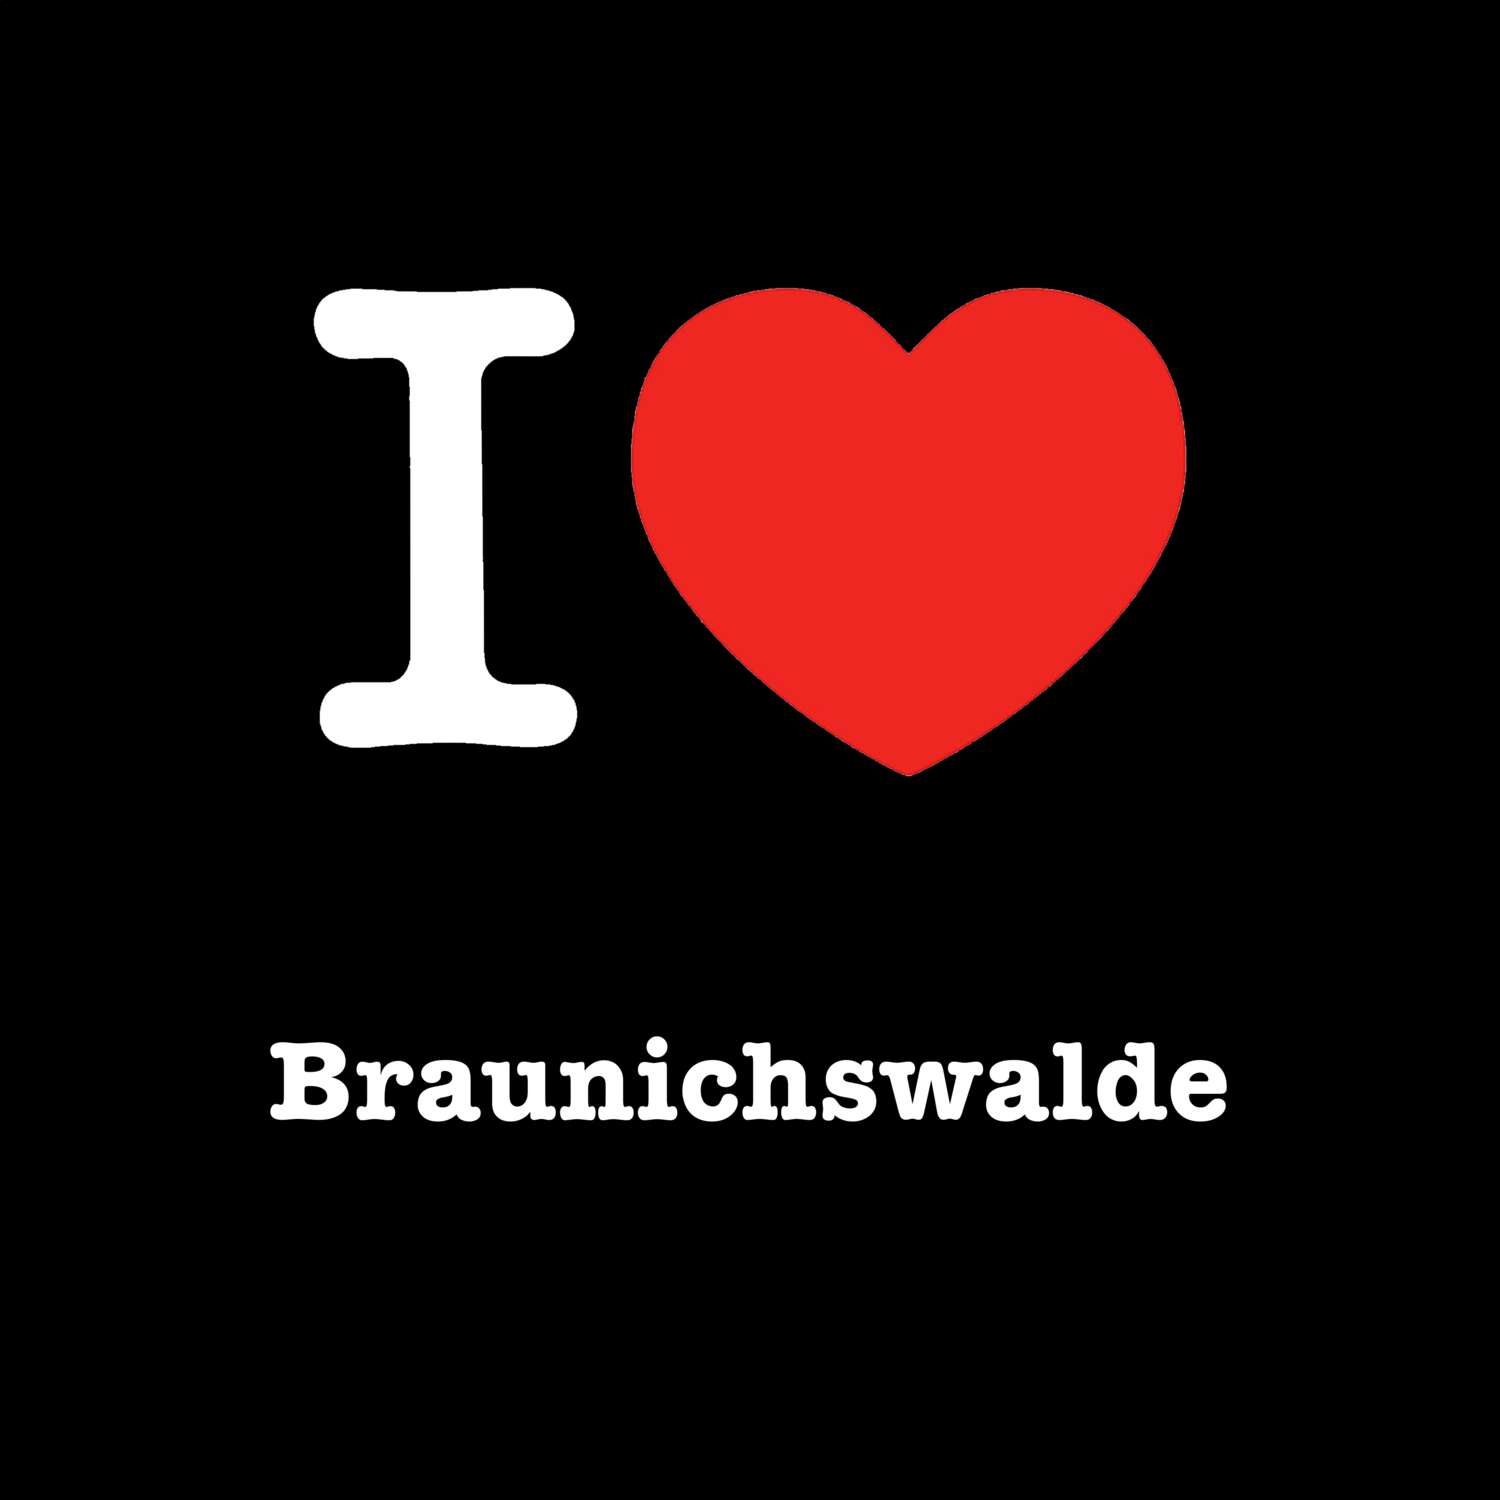 Braunichswalde T-Shirt »I love«